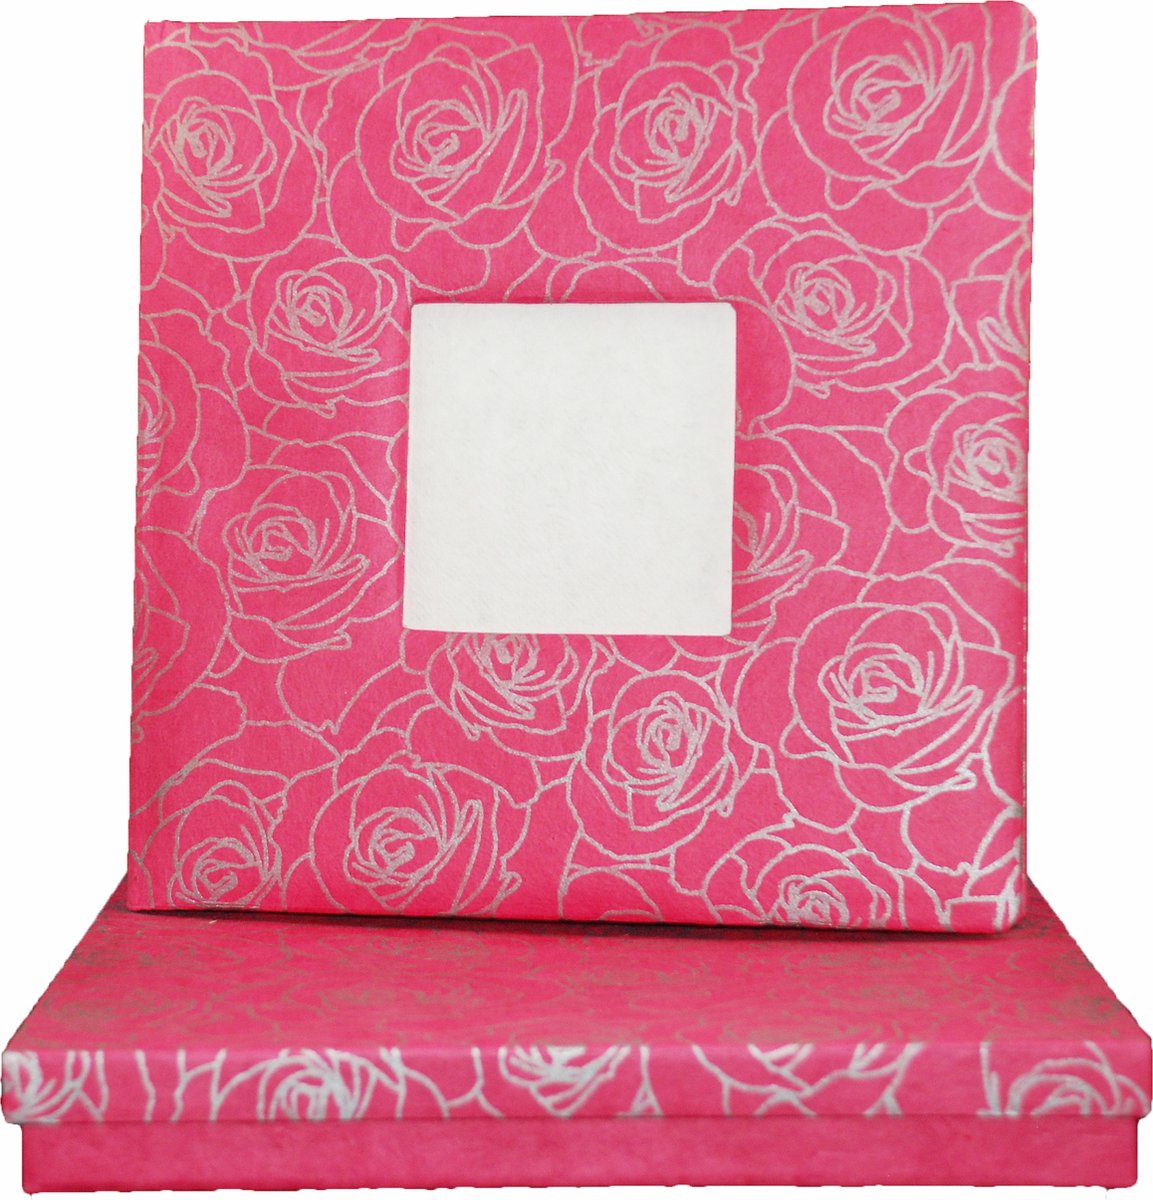 Gastenboek/notitieboek fuchsia-roze met rozen print, 26x26cm, in bewaardoos